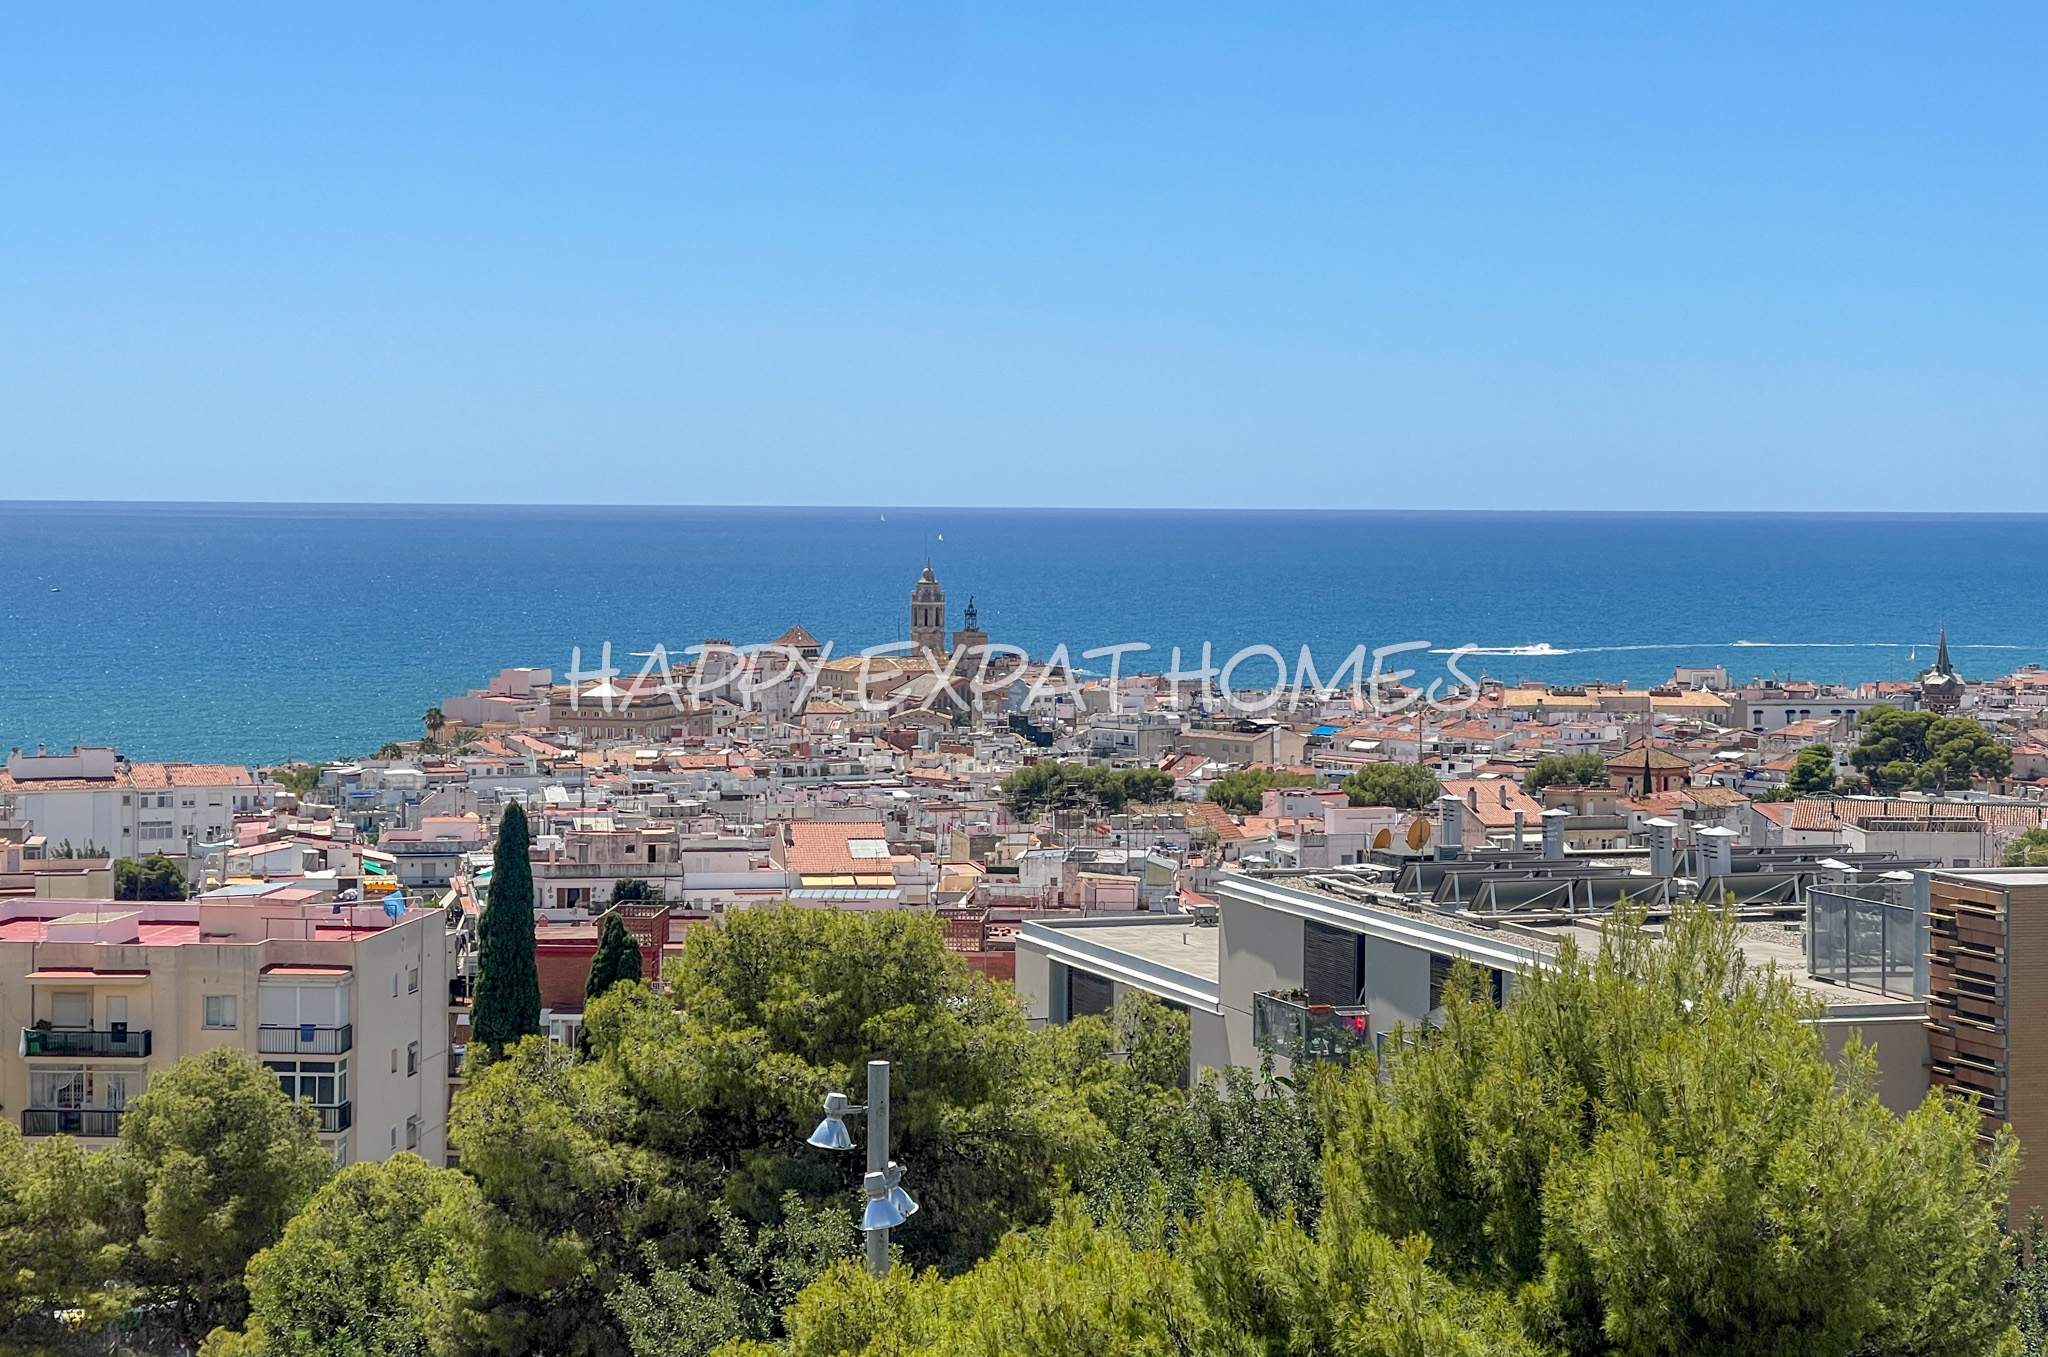 Ático triplex con increíbles vistas al mar en Sitges